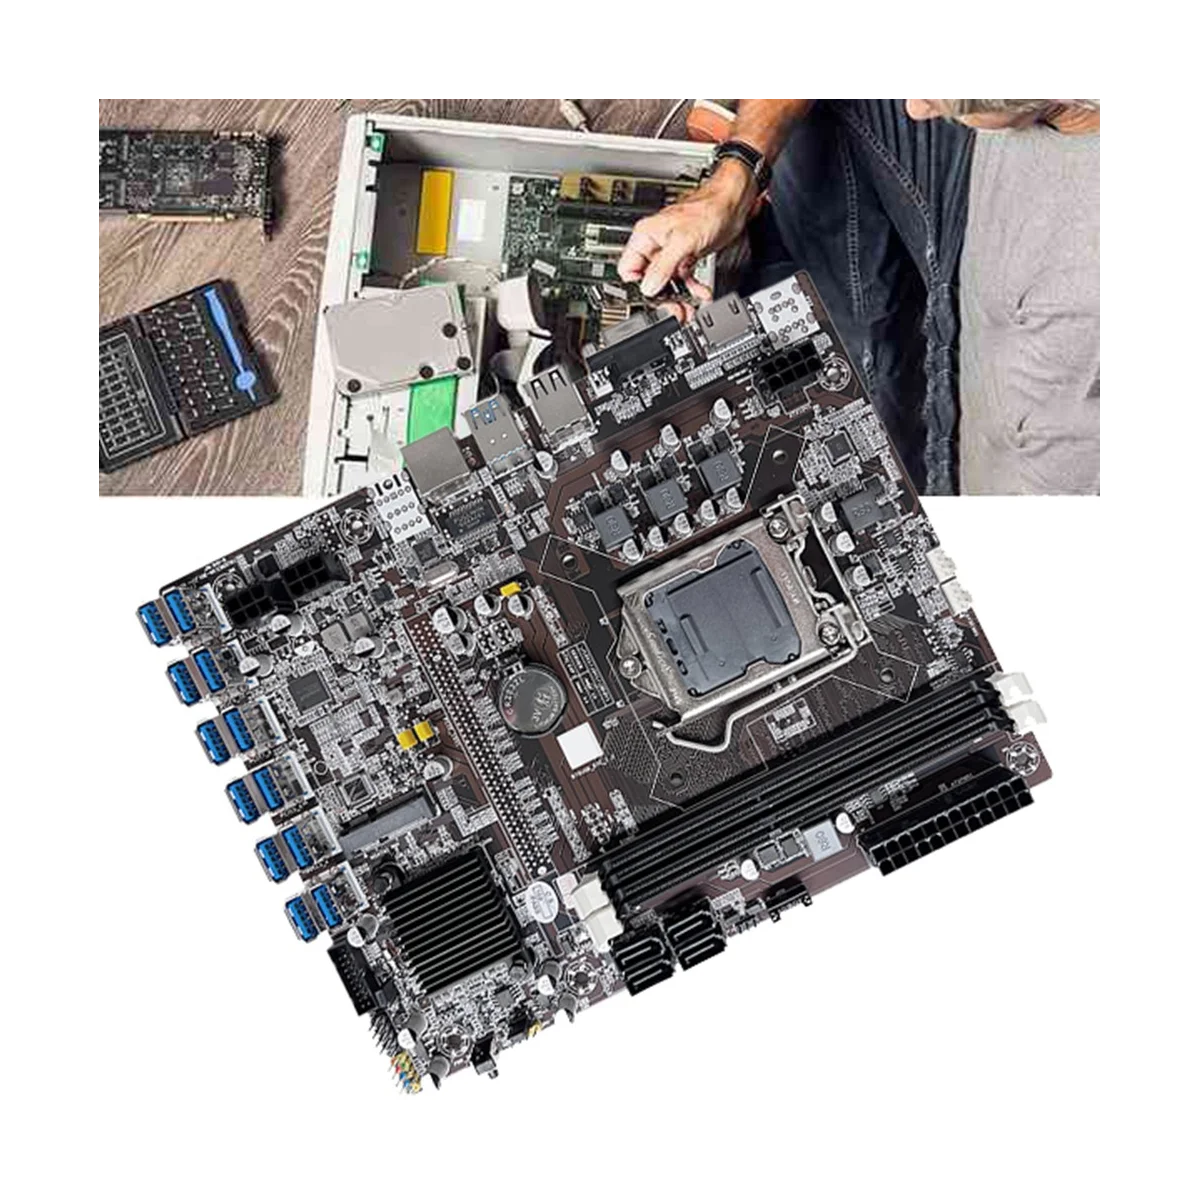 Дънна платка за майнинга B75 12GPU БТК + Процесор G1610 + кабел SATA + Термопаста Подкрепа на оперативна памет, 2XDDR3 дънна Платка за майнинга B75 12USB